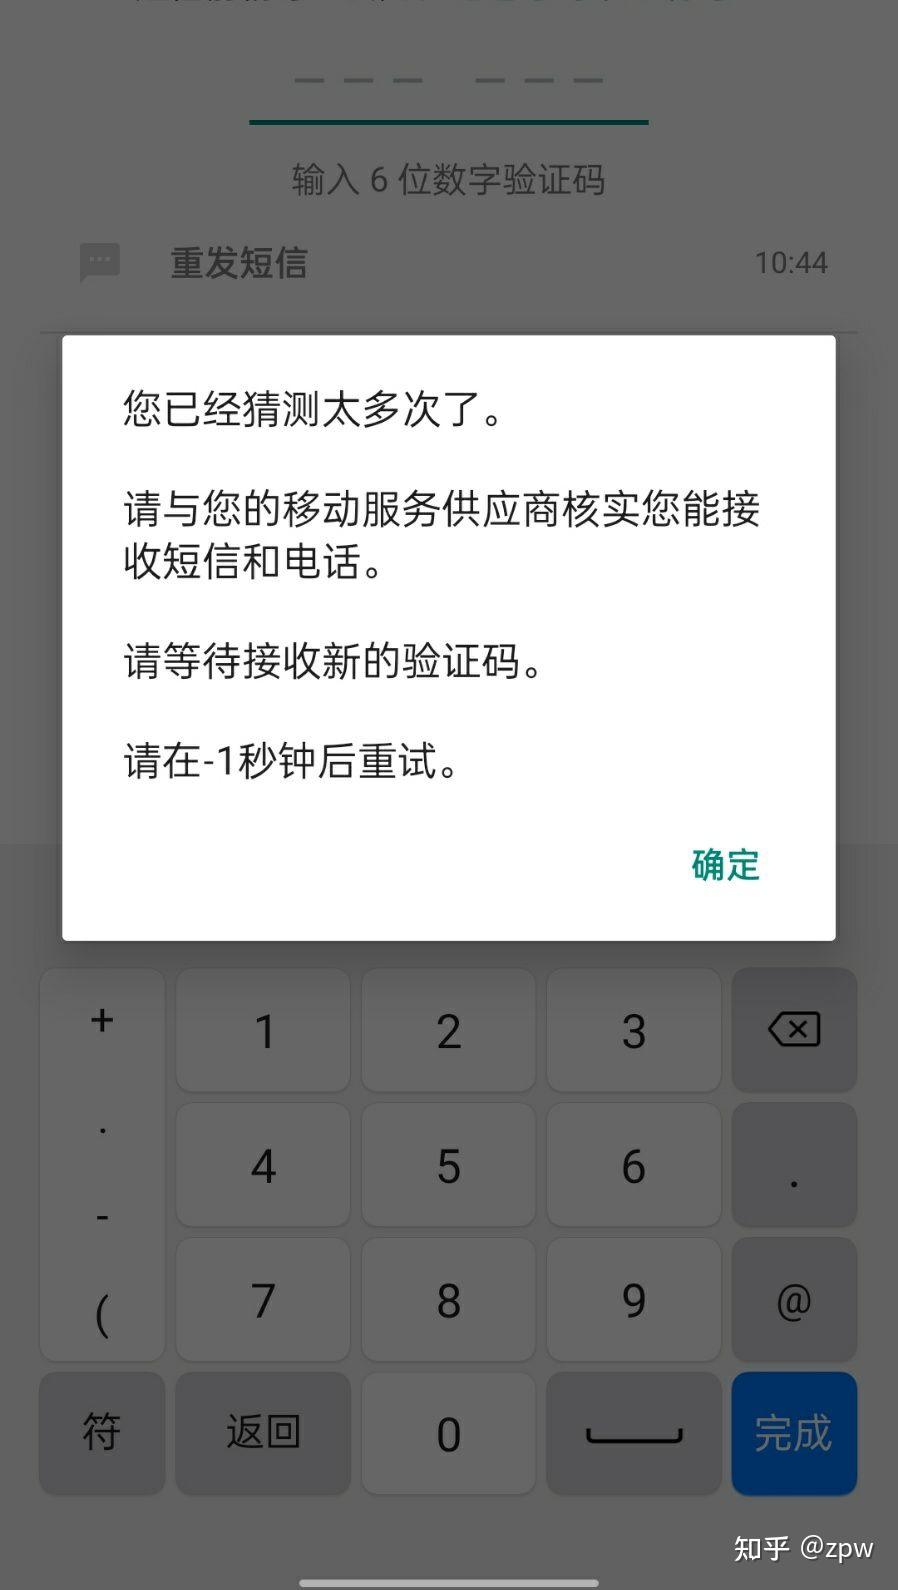 纸飞机中文收不到验证码怎么办,纸飞机app为什么我的手机号不发验证码